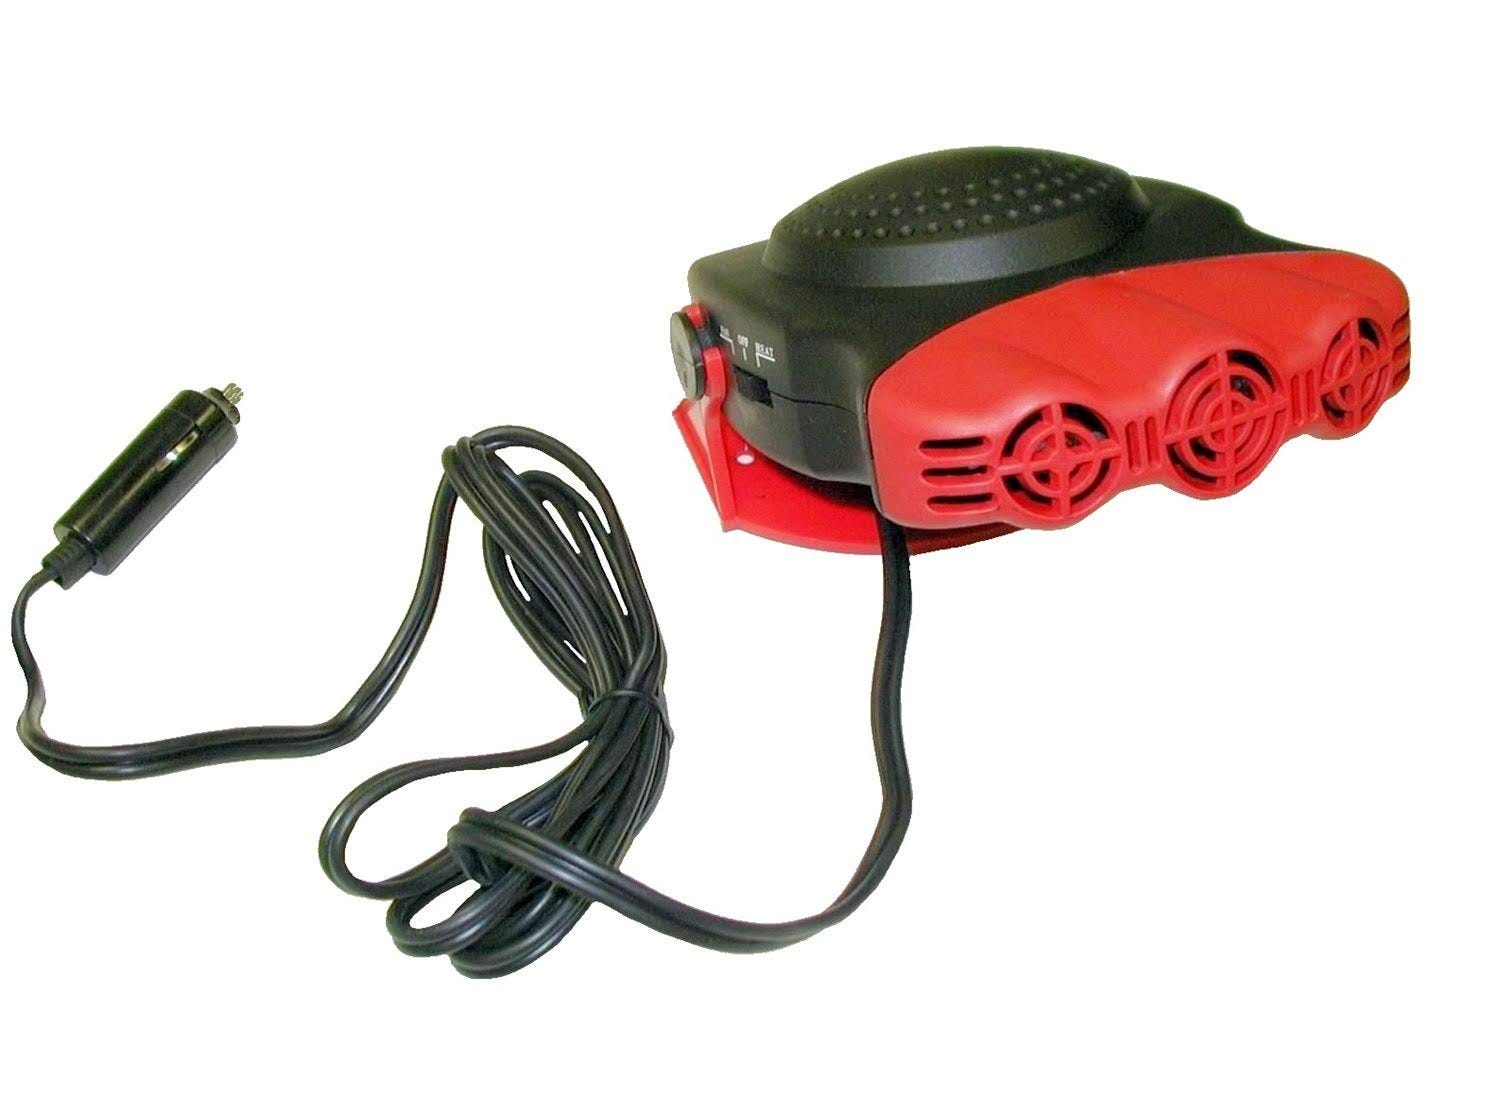 Kats 150 Watt Portable Car Heater | Image